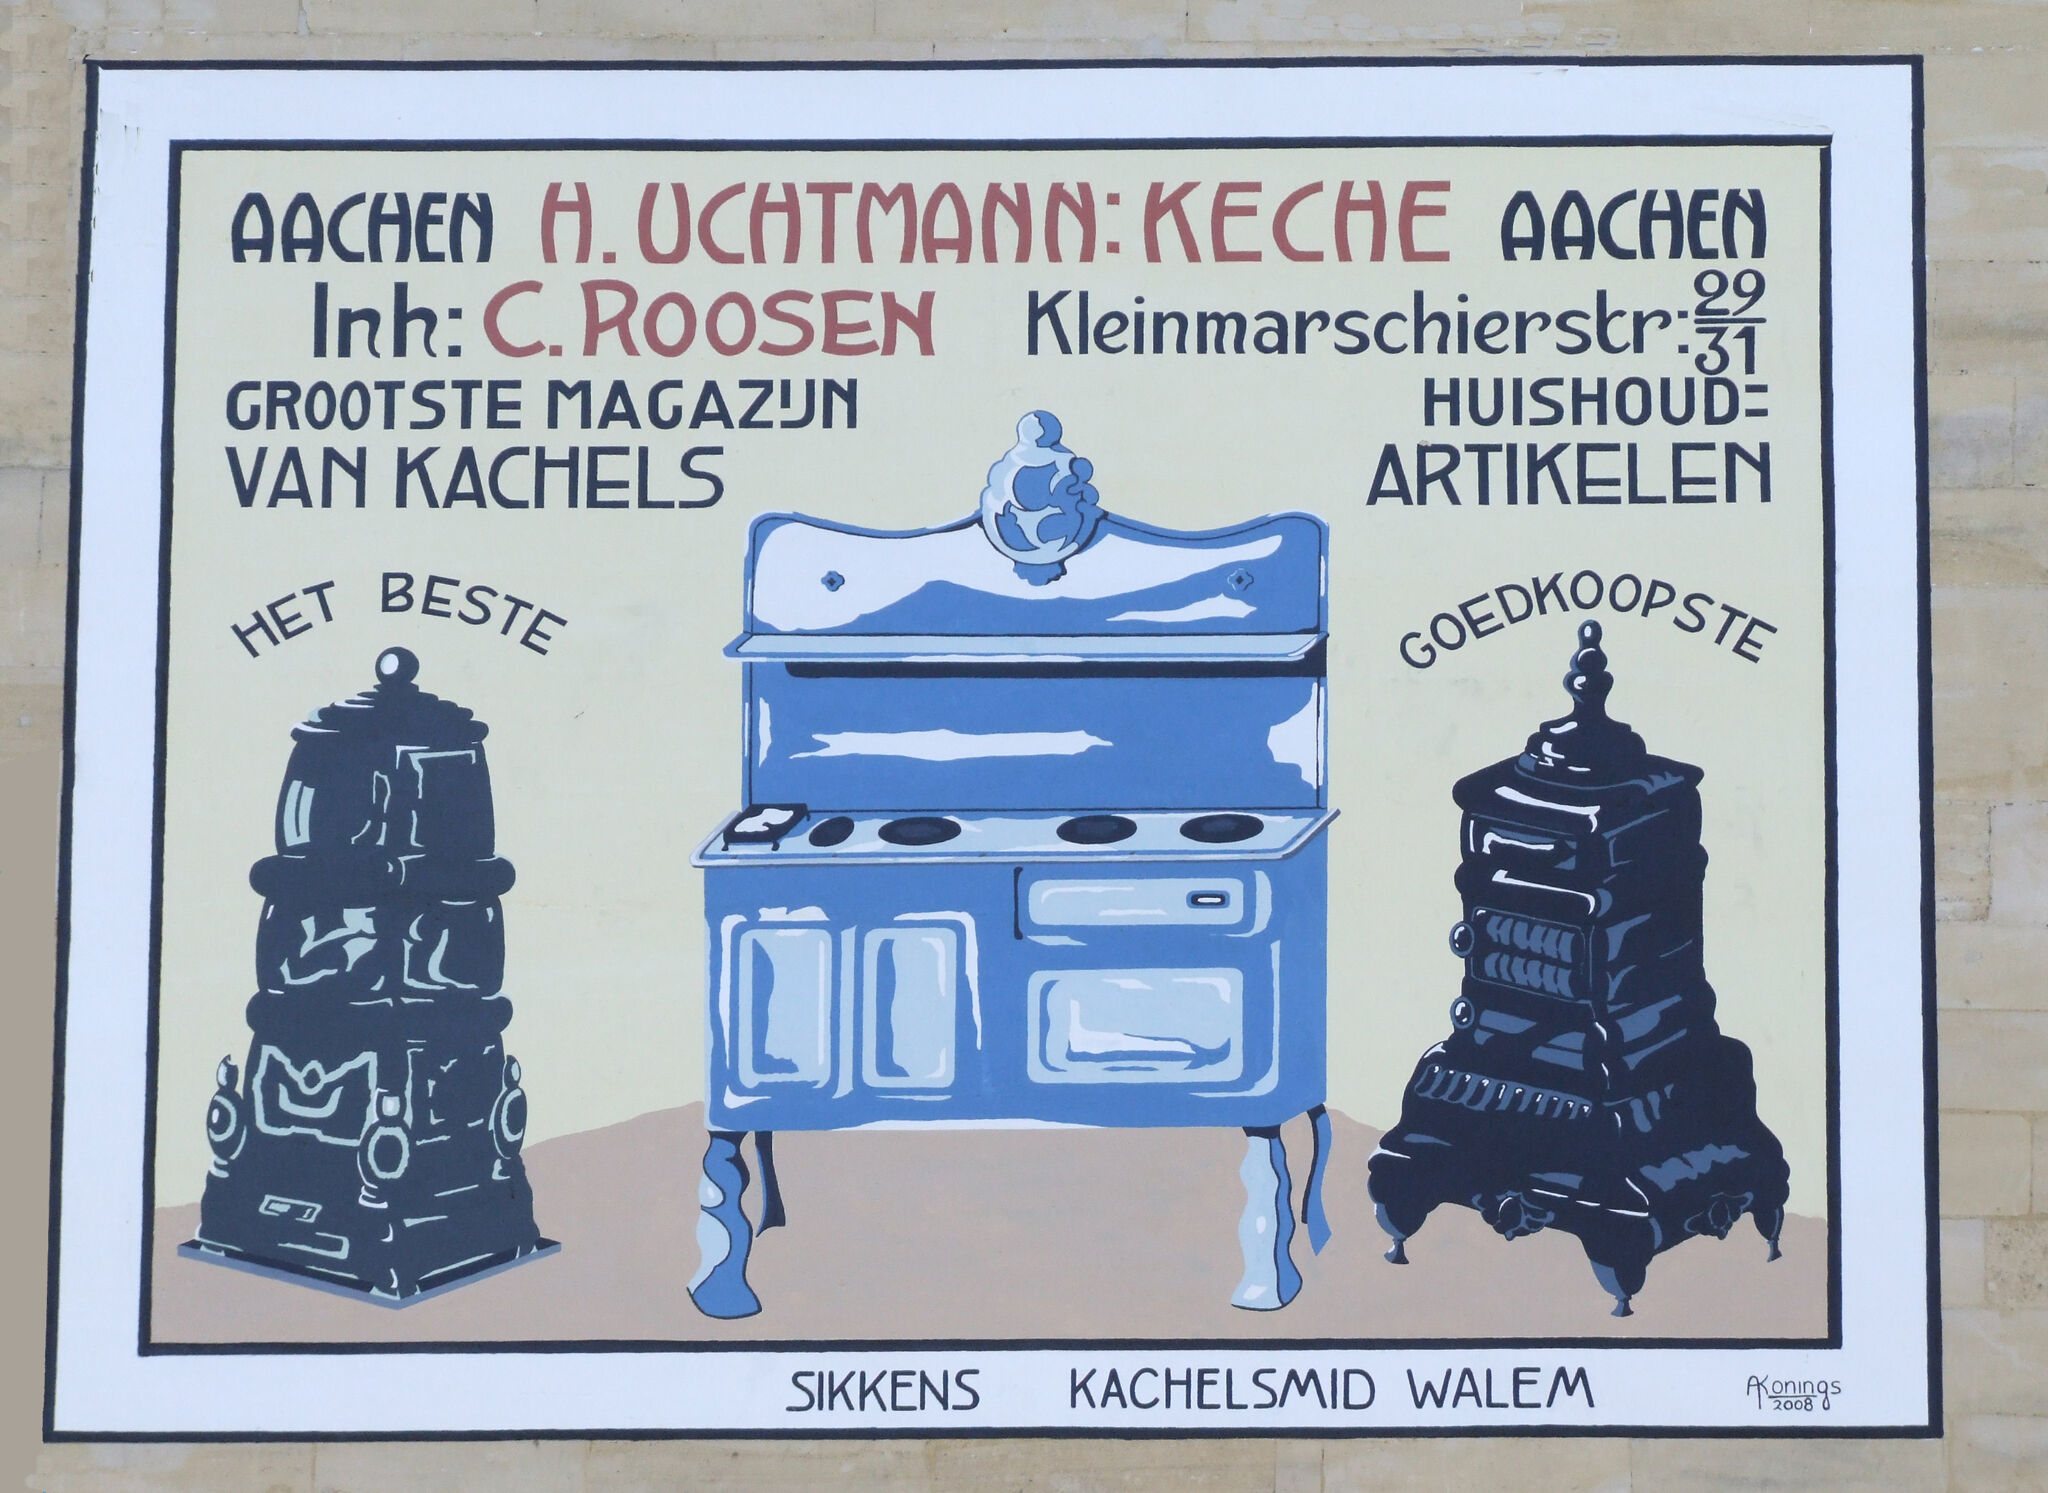 André Konings&mdash;7. Uchtmann & Keche Kachels Aachen